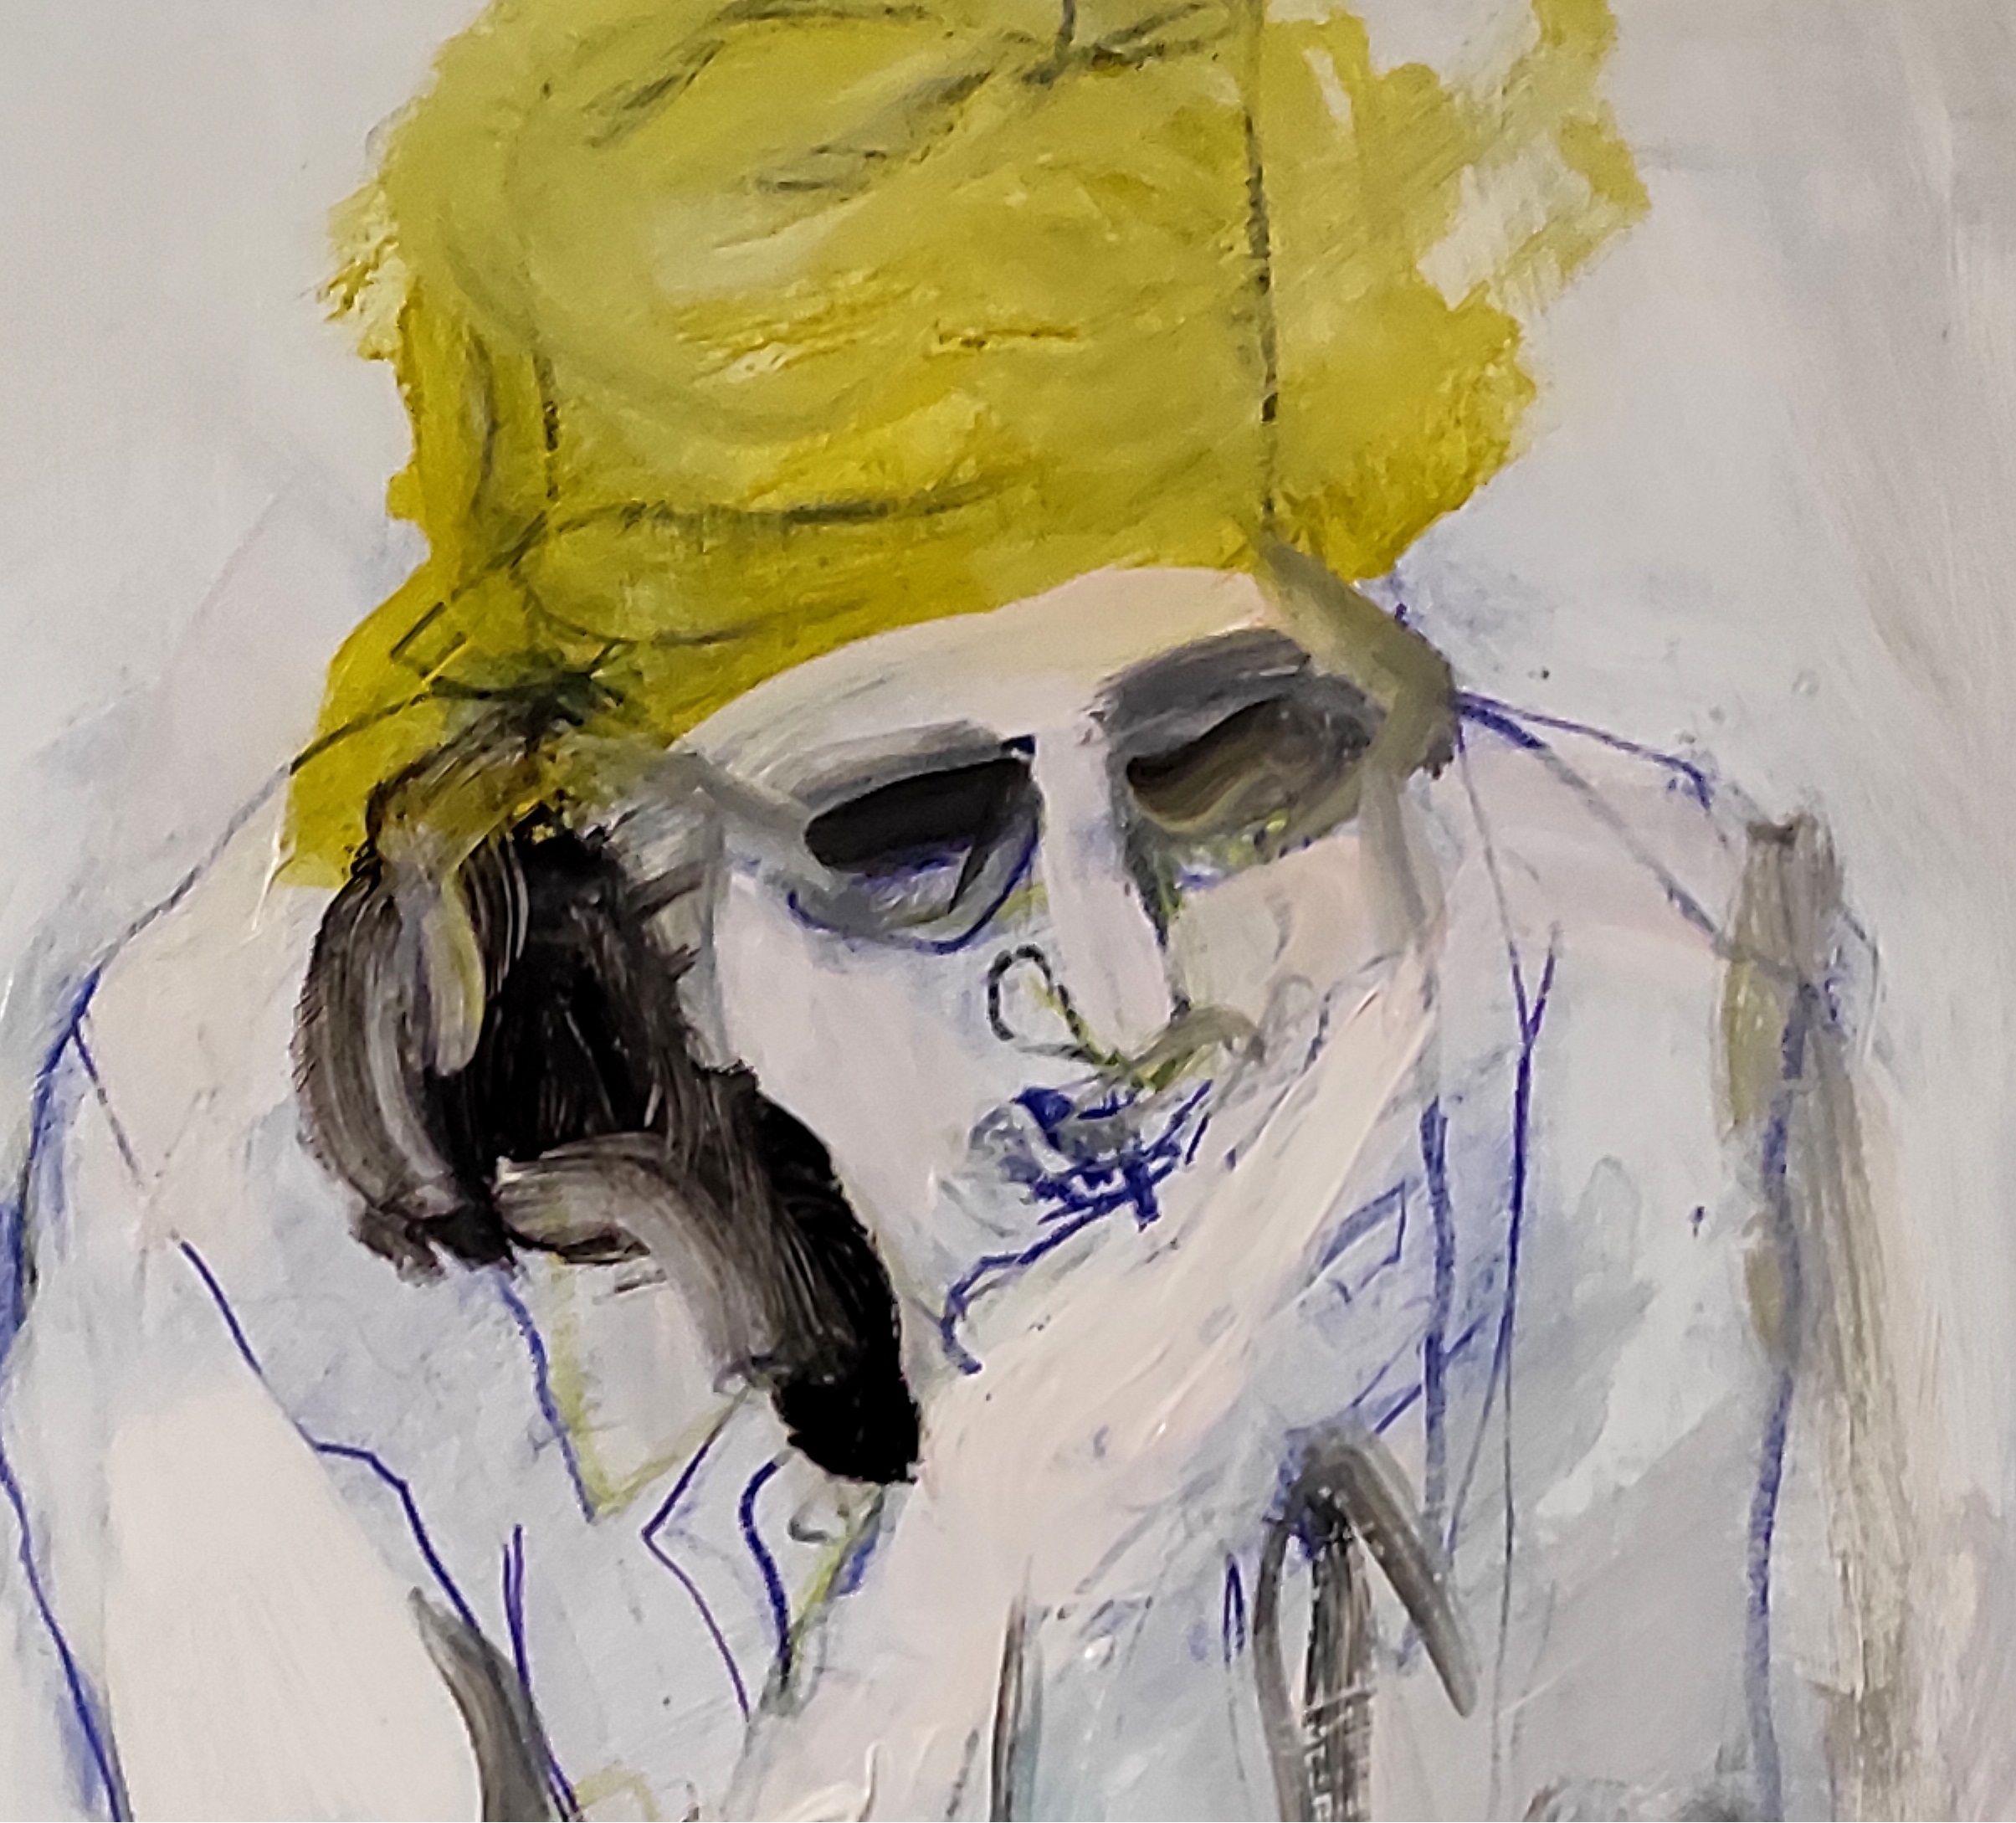 Ancienne femme assise, dessin, crayon/crayon coloré sur papier - Expressionniste Art par Barbara Kroll